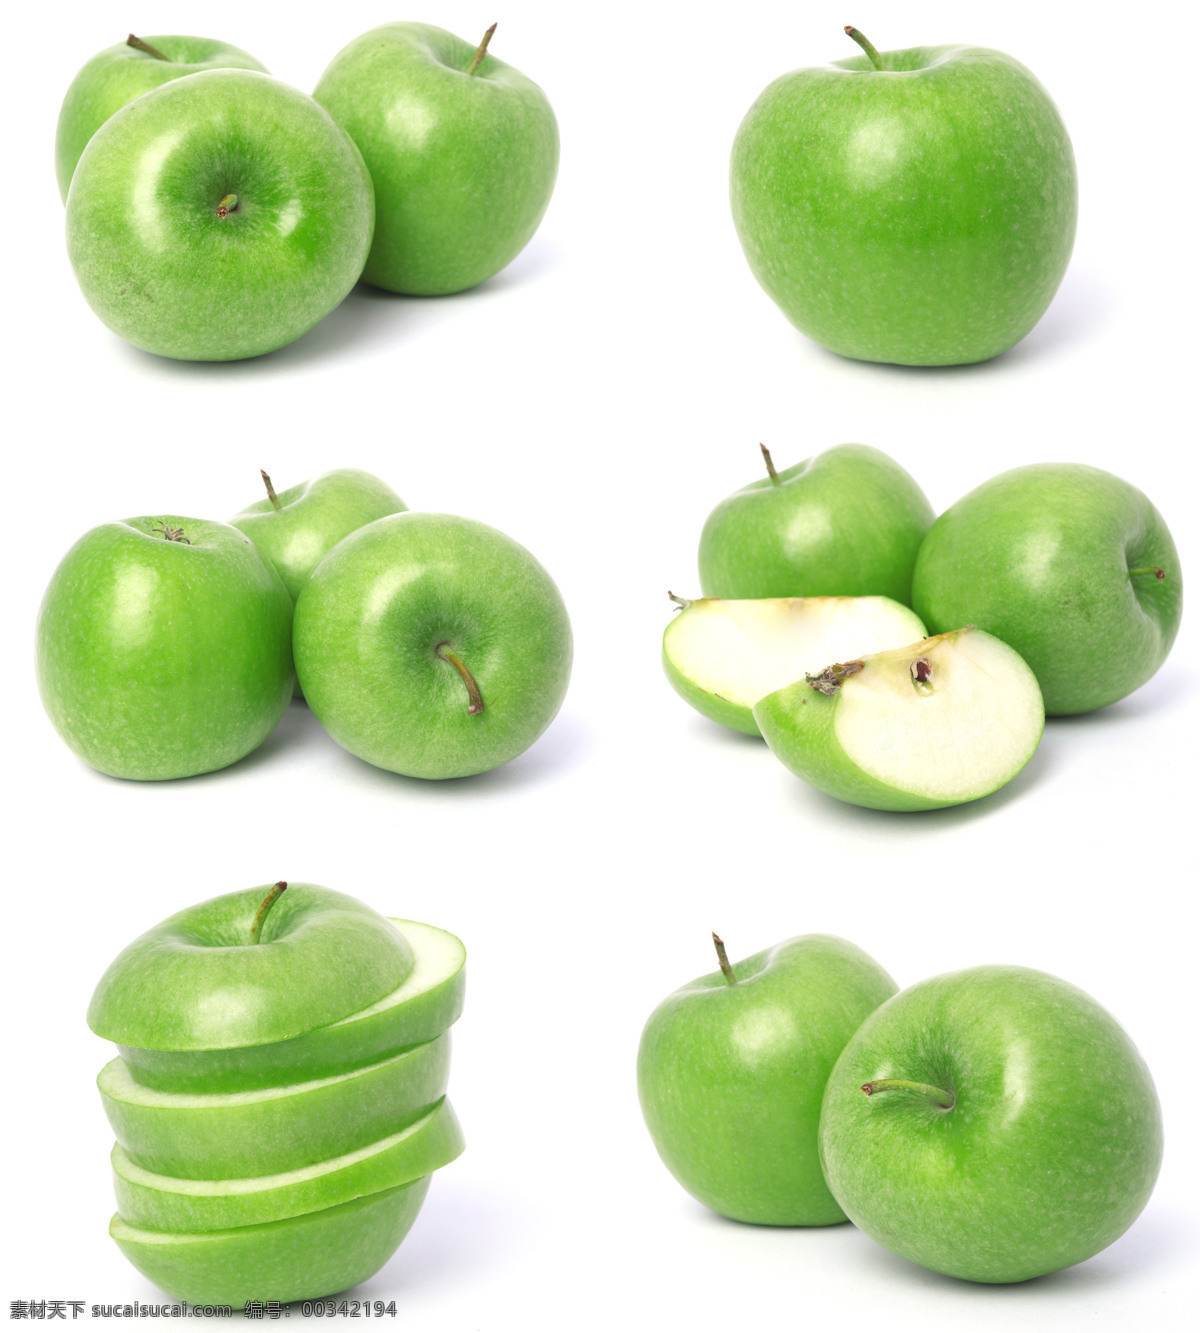 青苹果摄影 青苹果 苹果摄影 苹果 食物 美食 水果 水果广告 水果素材 水果蔬菜 餐饮美食 白色